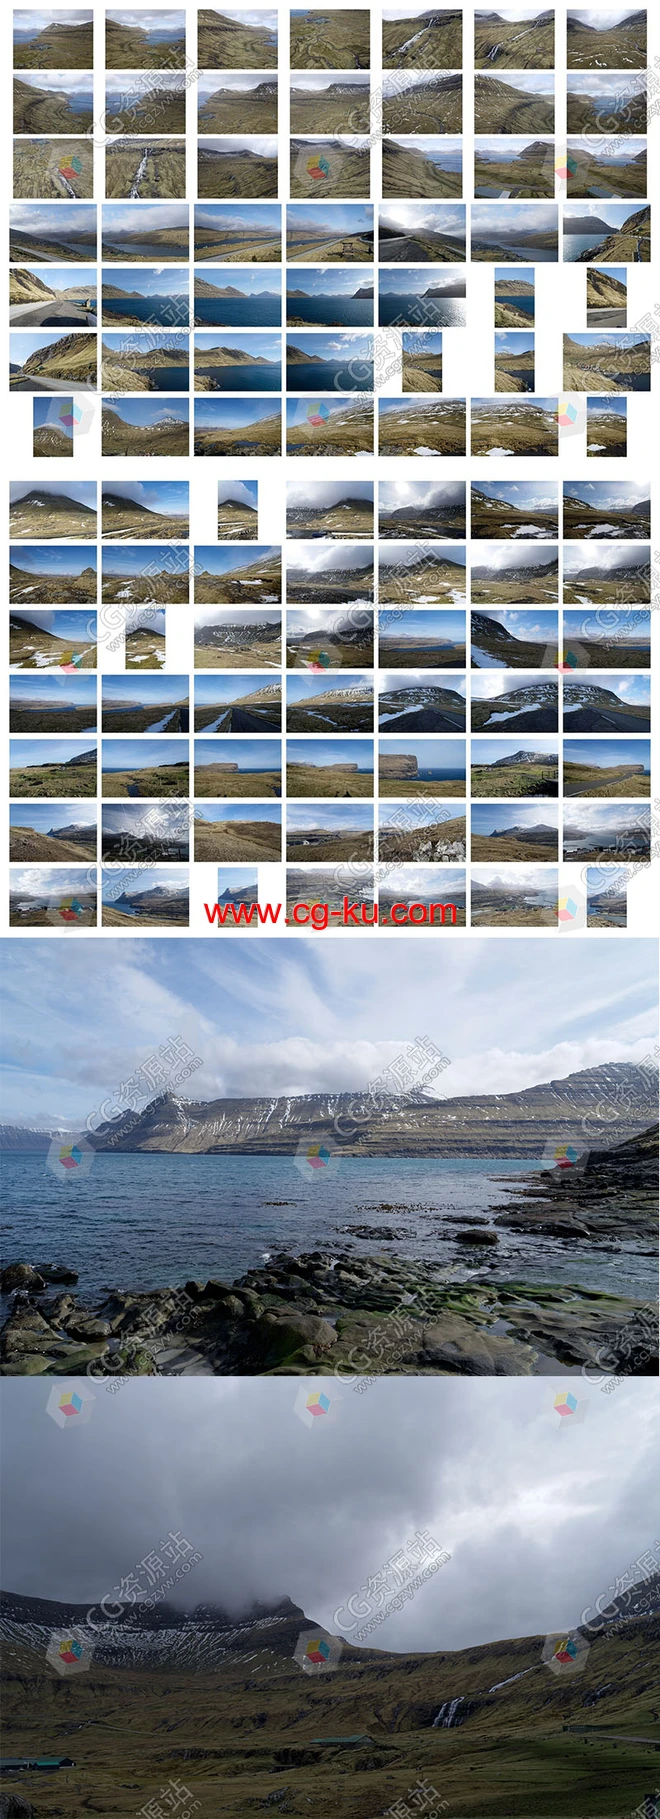 432张岛屿崎岖山峰道路景观高清参考图片的图片2